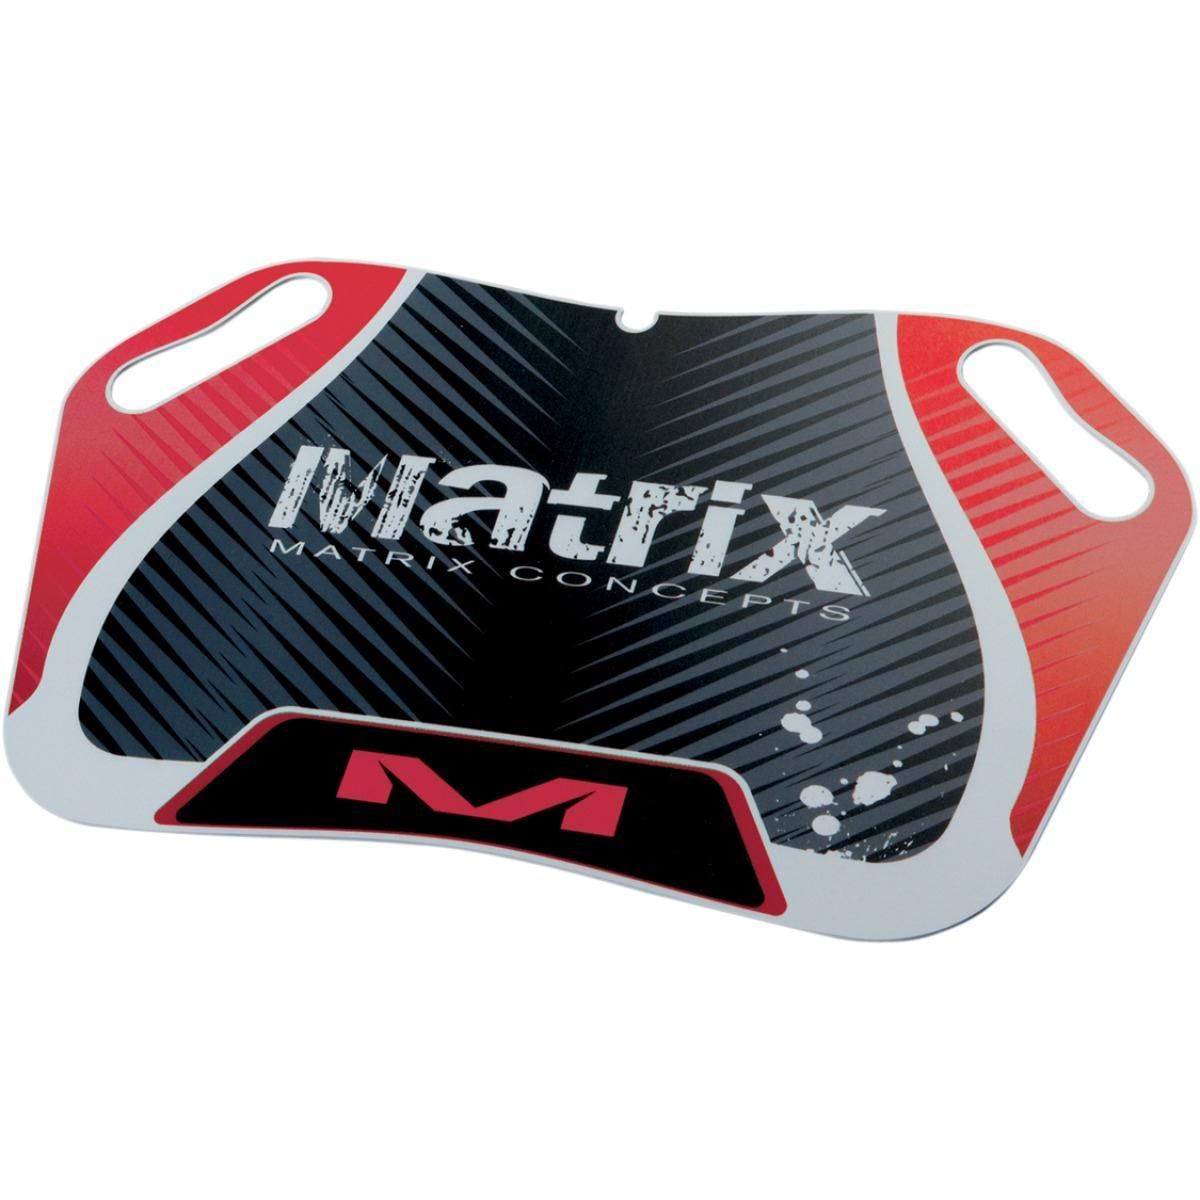 356E-MATRIX-M25-102 M25 Pit Board - Red